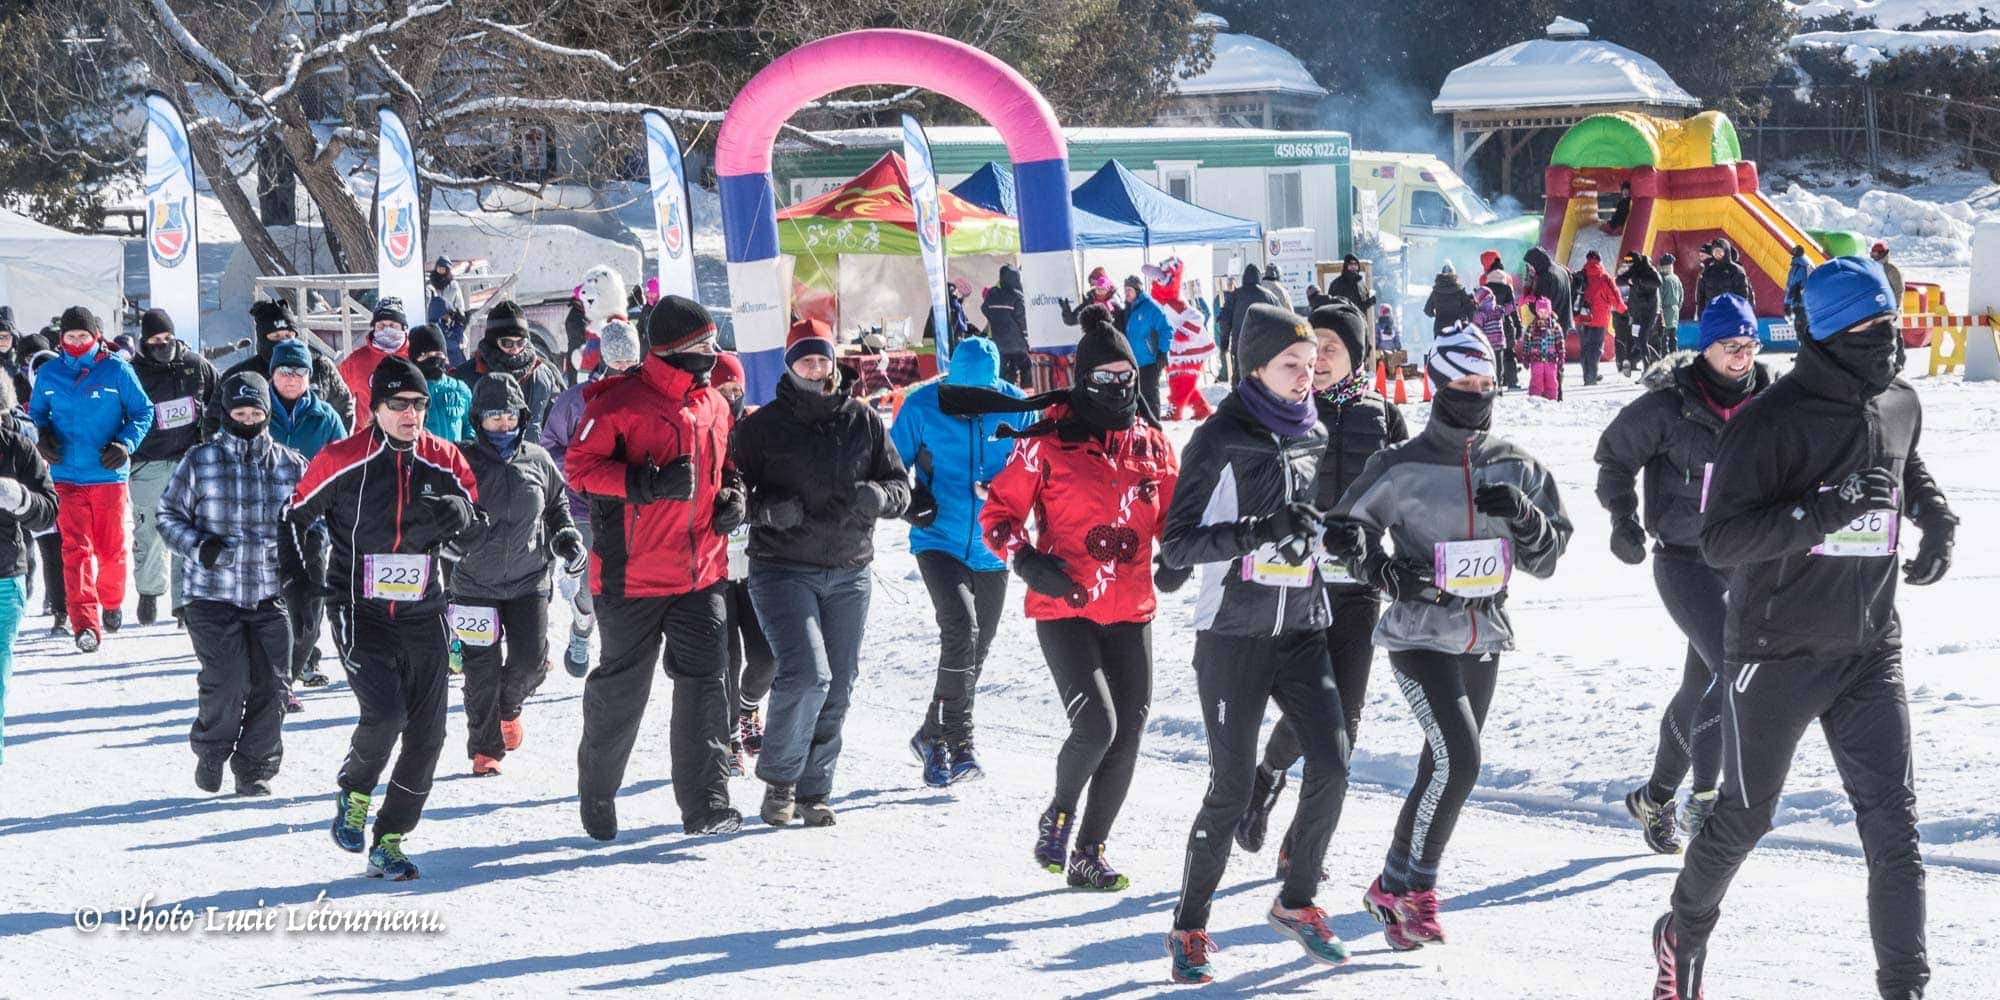 Le froid n'a pas empêché ces braves coureurs de prendre part à la première édition de la Course des Flocons sur le lac Rond à Sainte-Adèle, le 14 février 2016.